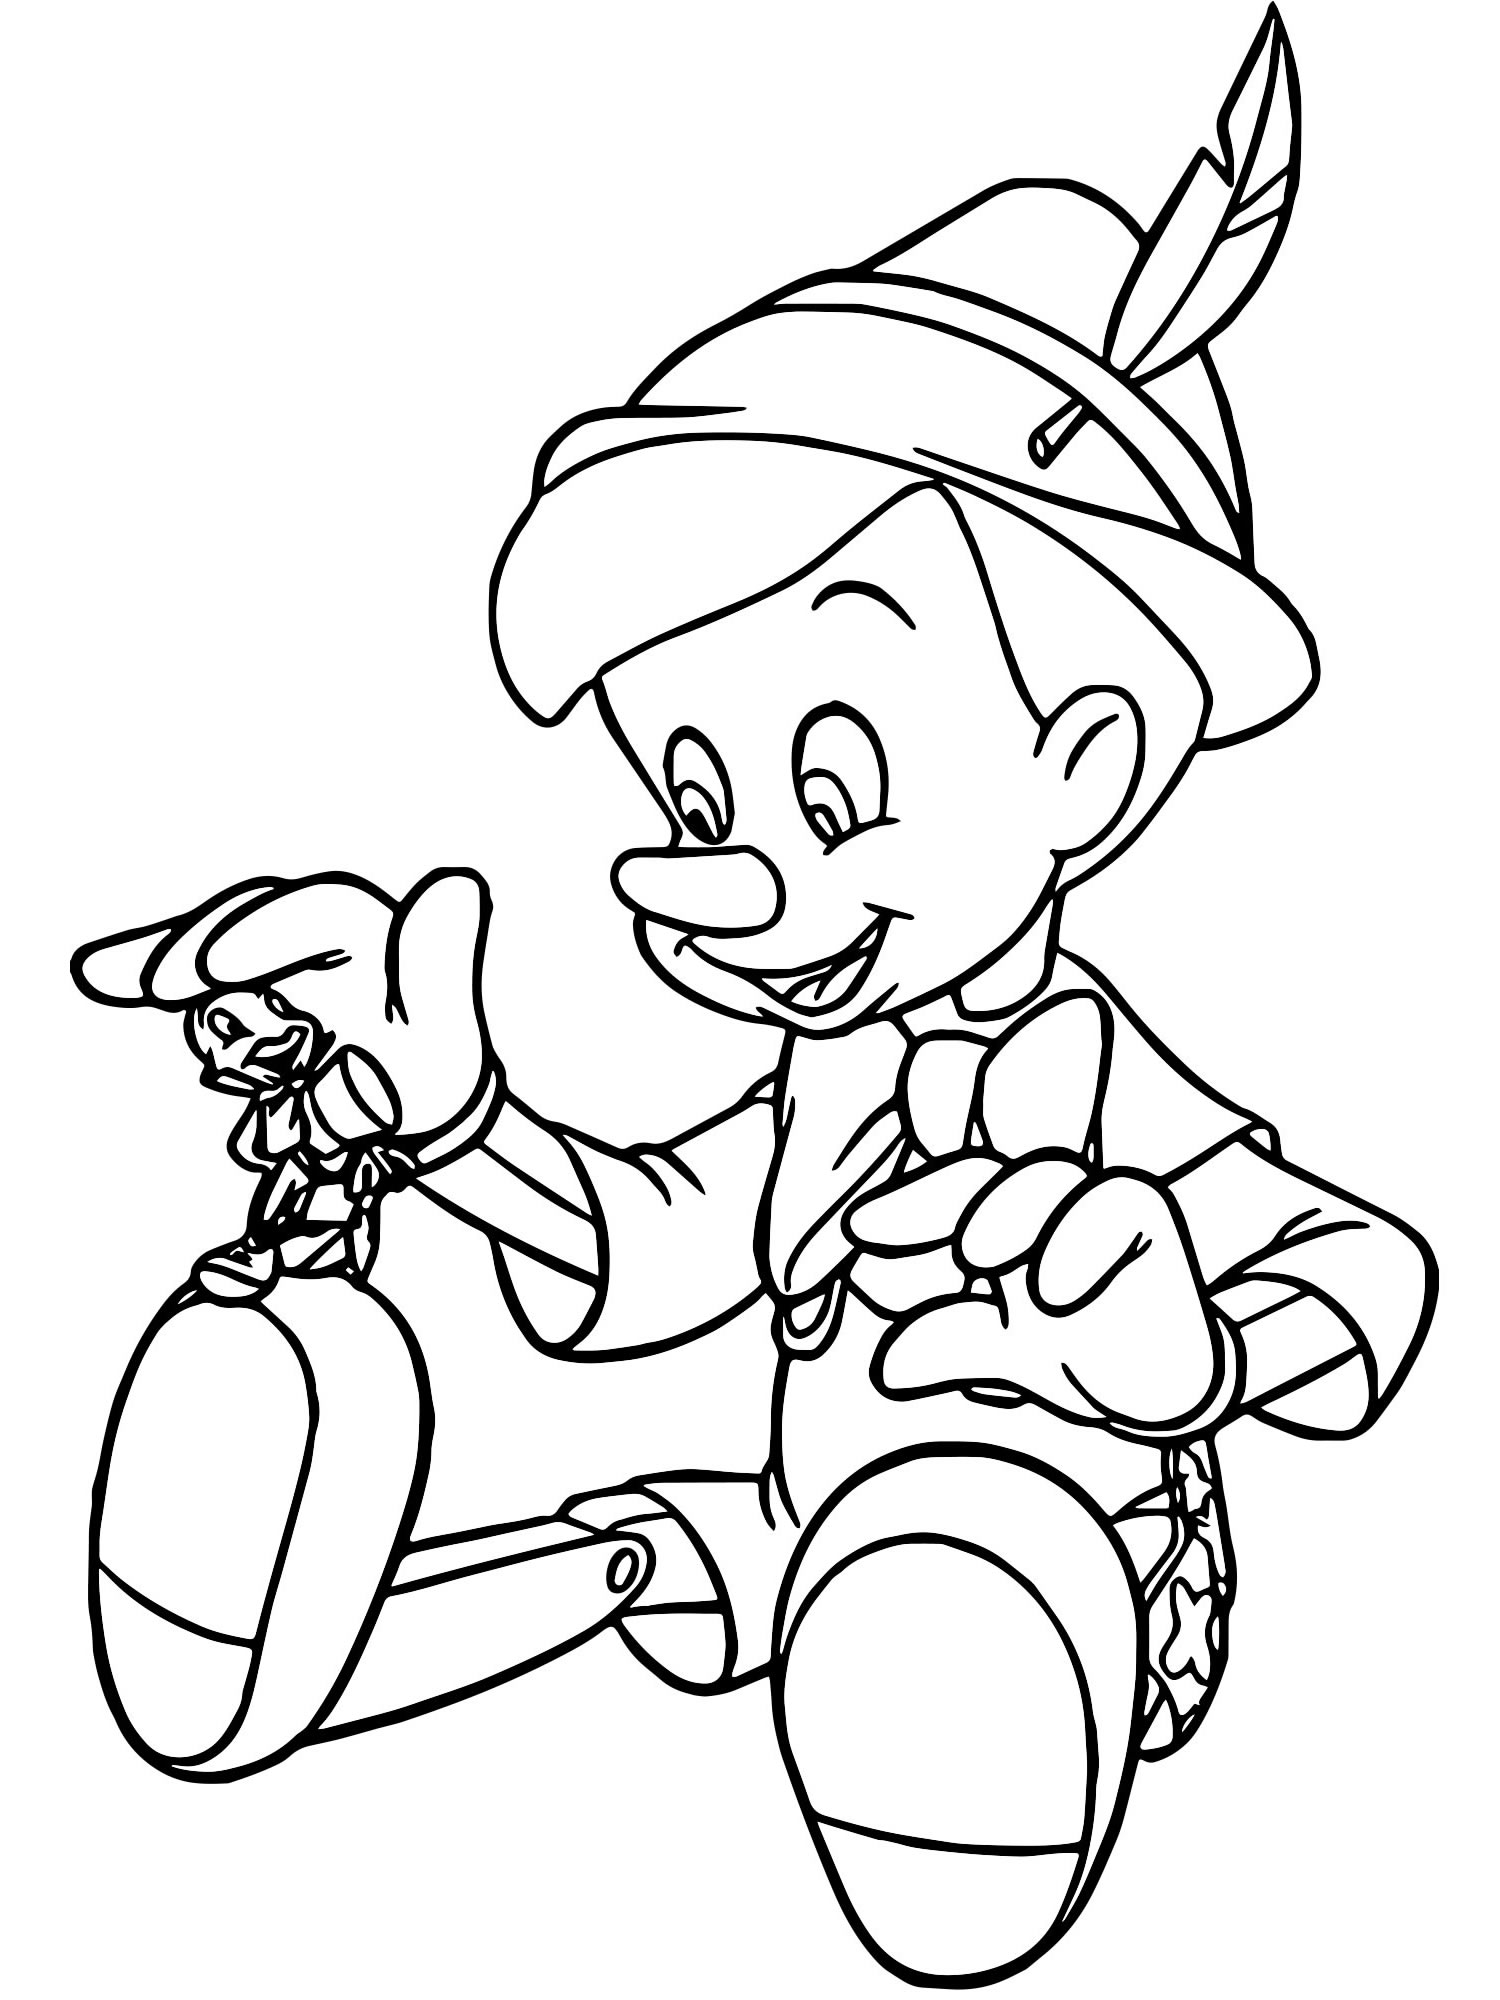 Пиноккио и сверчок Джимини раскраска для детей